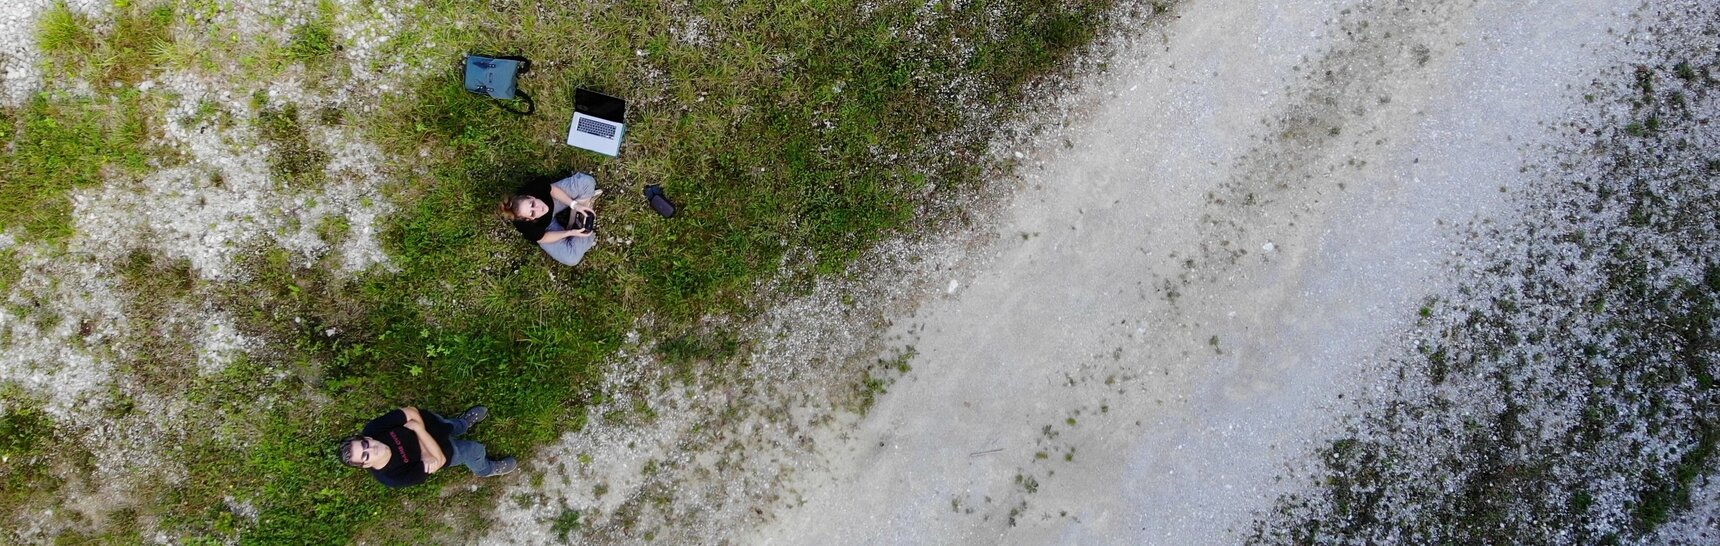 Künstler Oliver Ressler und Drohnenpilotin Verena Tscherner auf einer Wiese von oben fotografiert